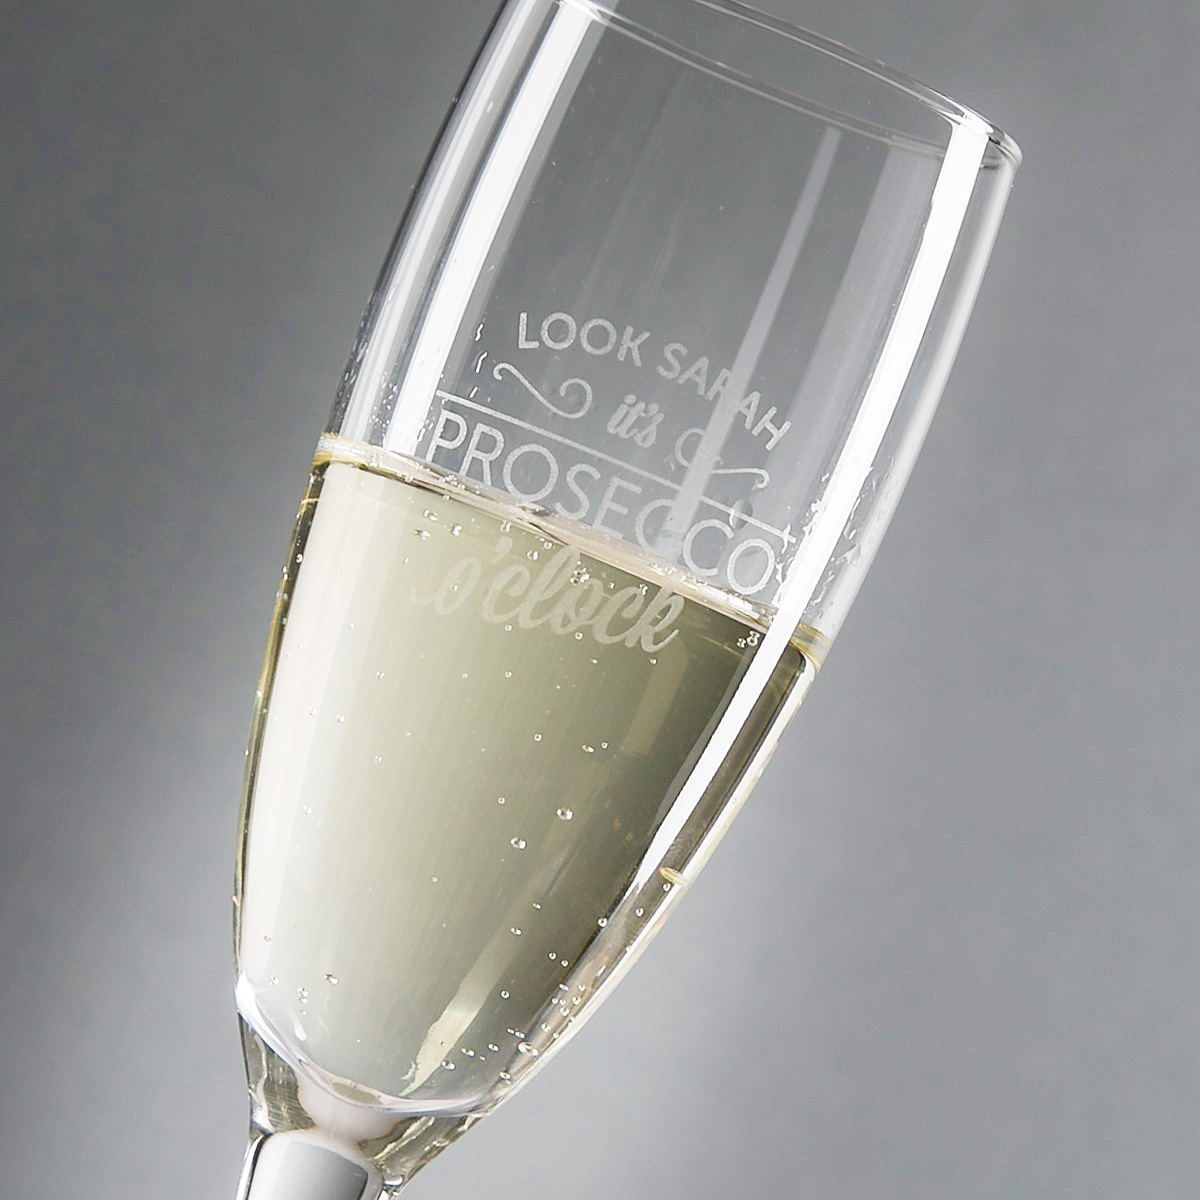 Personalised Champagne Flute - Prosecco O'Clock